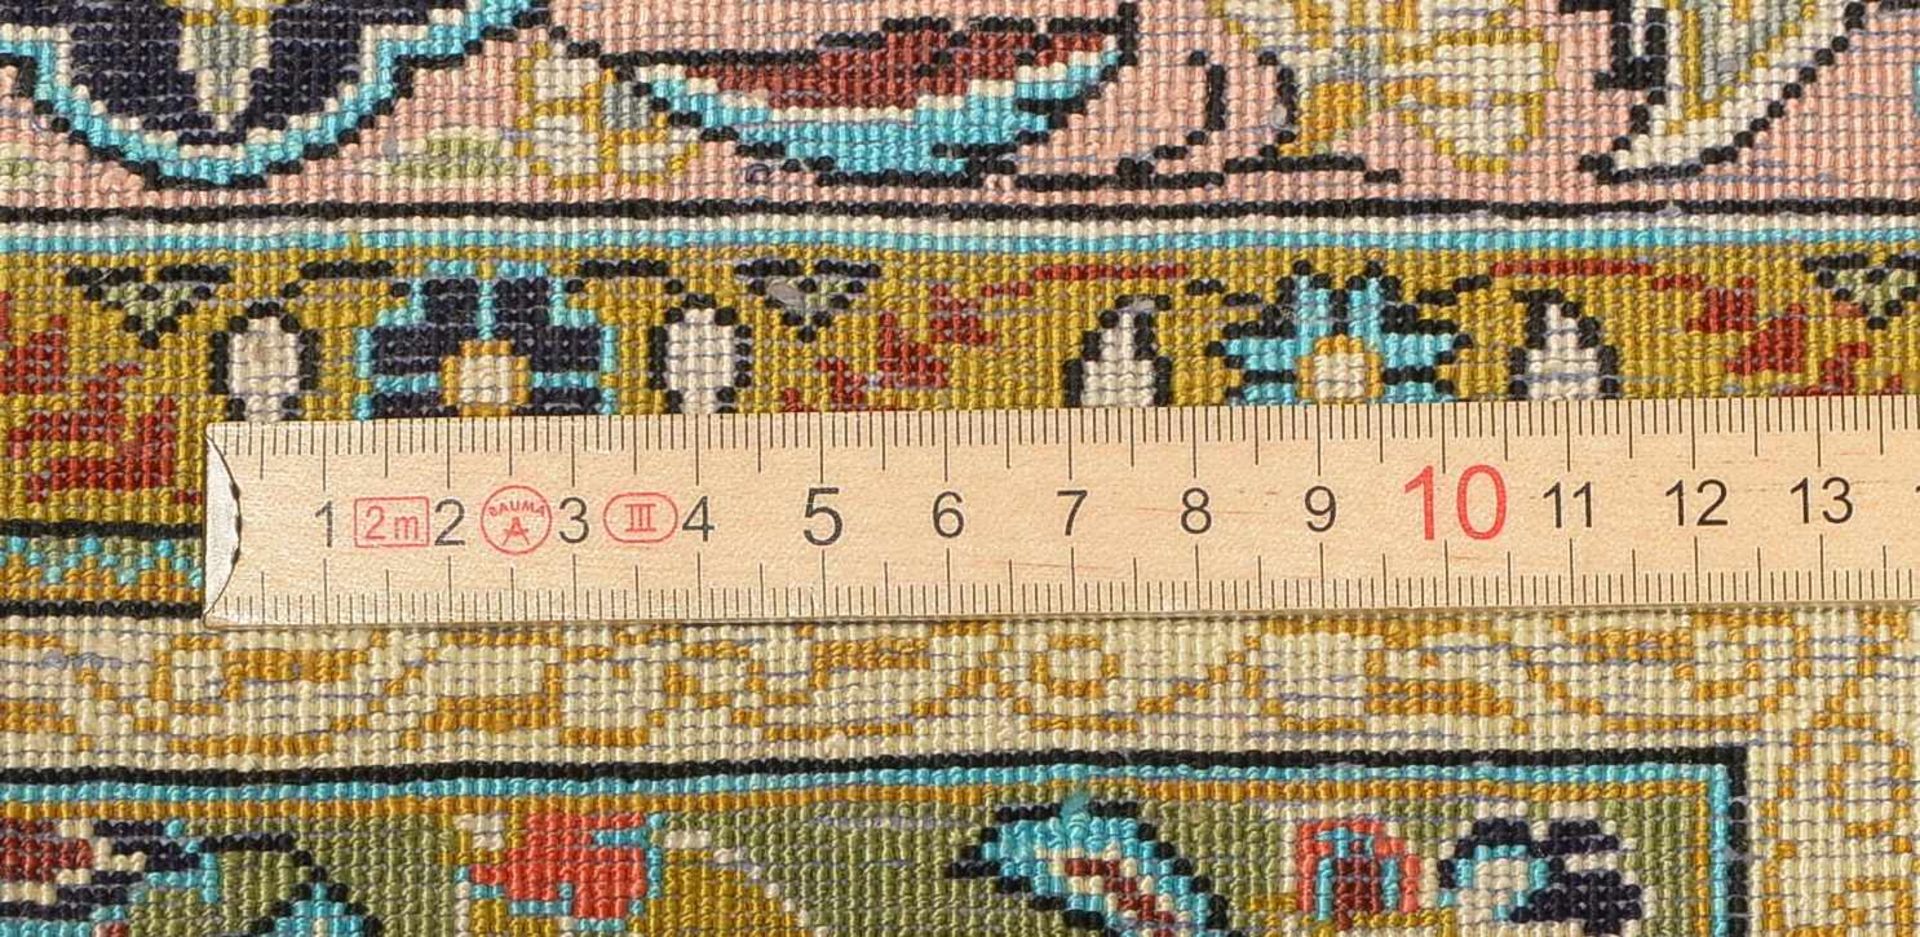 Ghom-Orientteppich, Seide auf Seide geknüpft, einwandfreier Florzustand, sauber; Maße 160 x 110 cm - Bild 2 aus 2